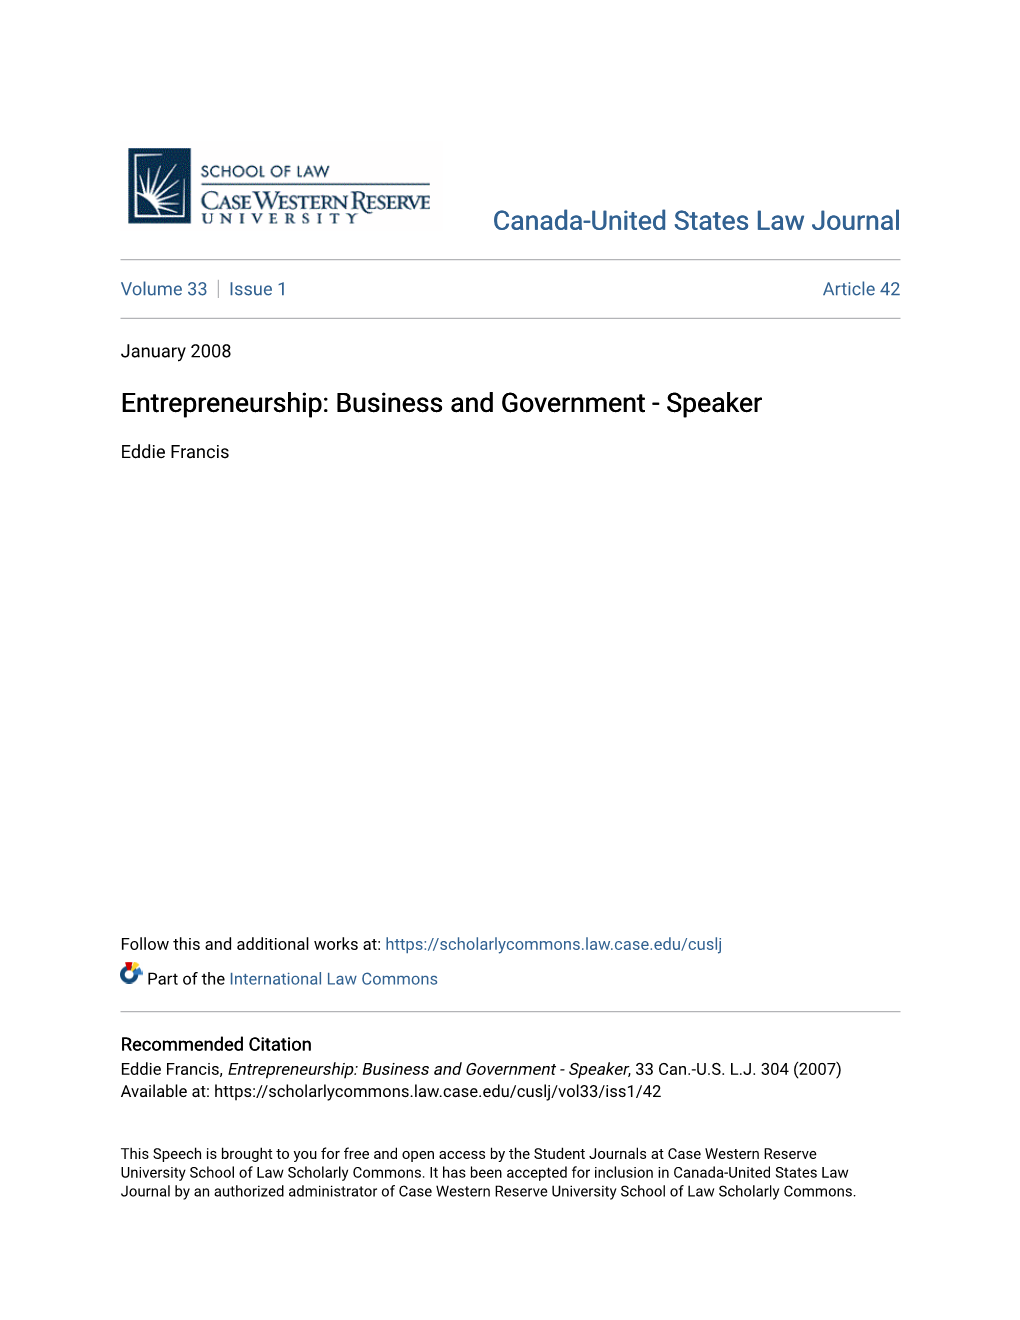 Entrepreneurship: Business and Government - Speaker